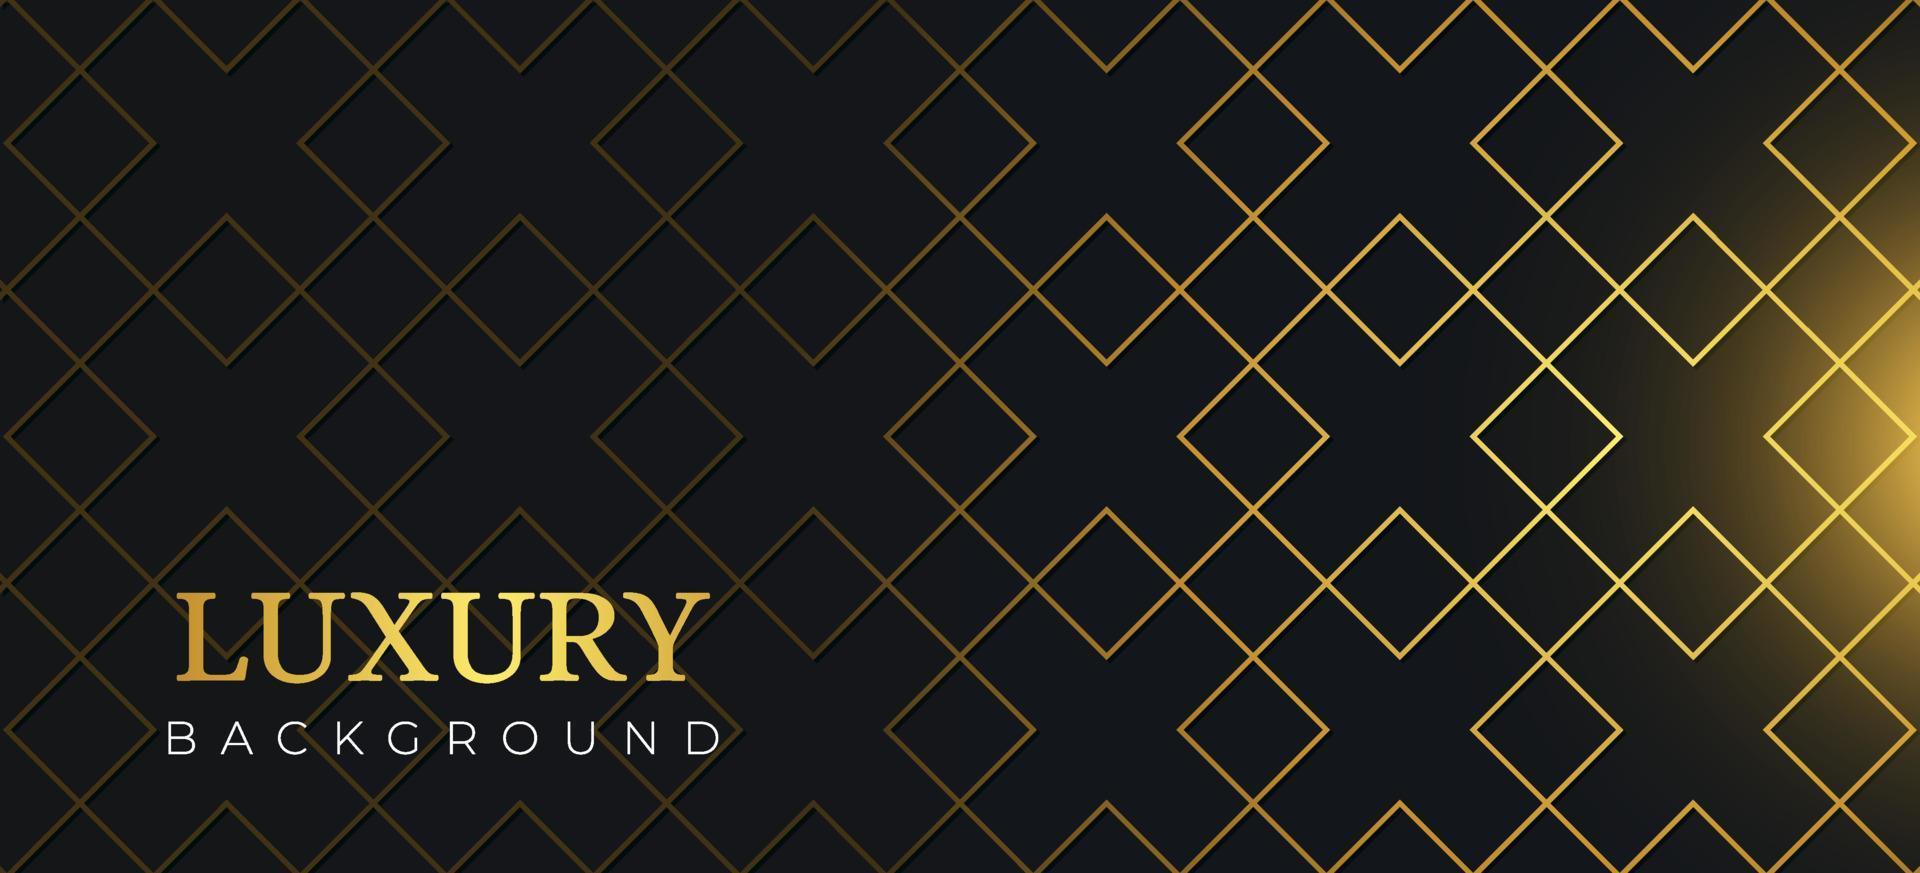 moderne abstracte geometrische op zwarte achtergrond. luxe sjabloon met gouden vorm geschikt voor webbanner, uitnodiging, wenskaart, visitekaartje vector